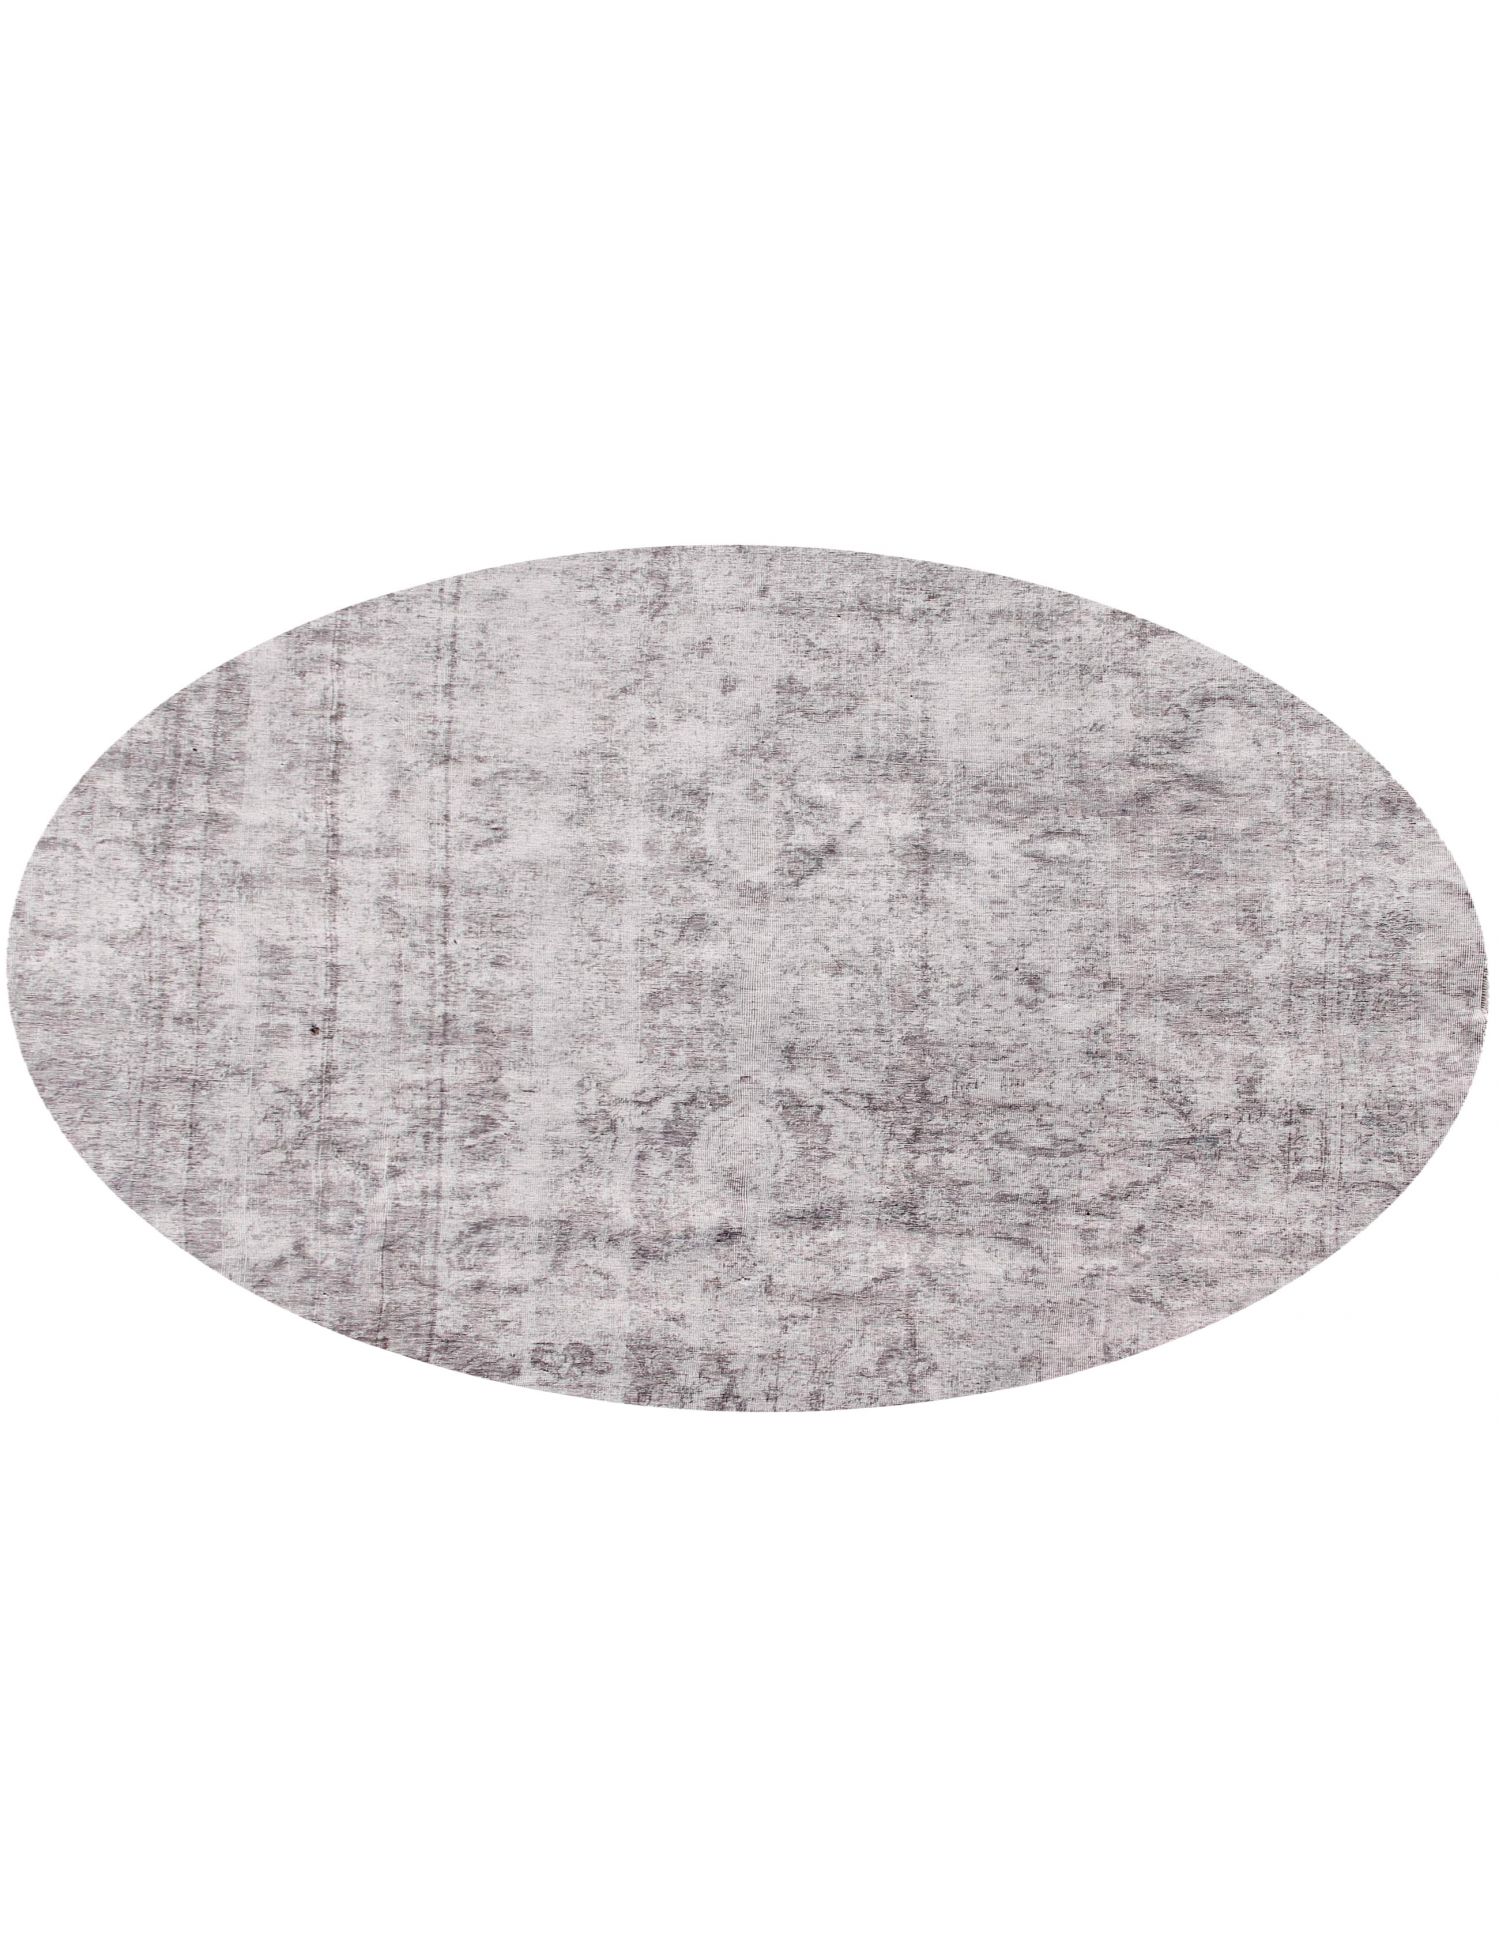 Rund  Vintage Teppich  grau <br/>265 x 265 cm